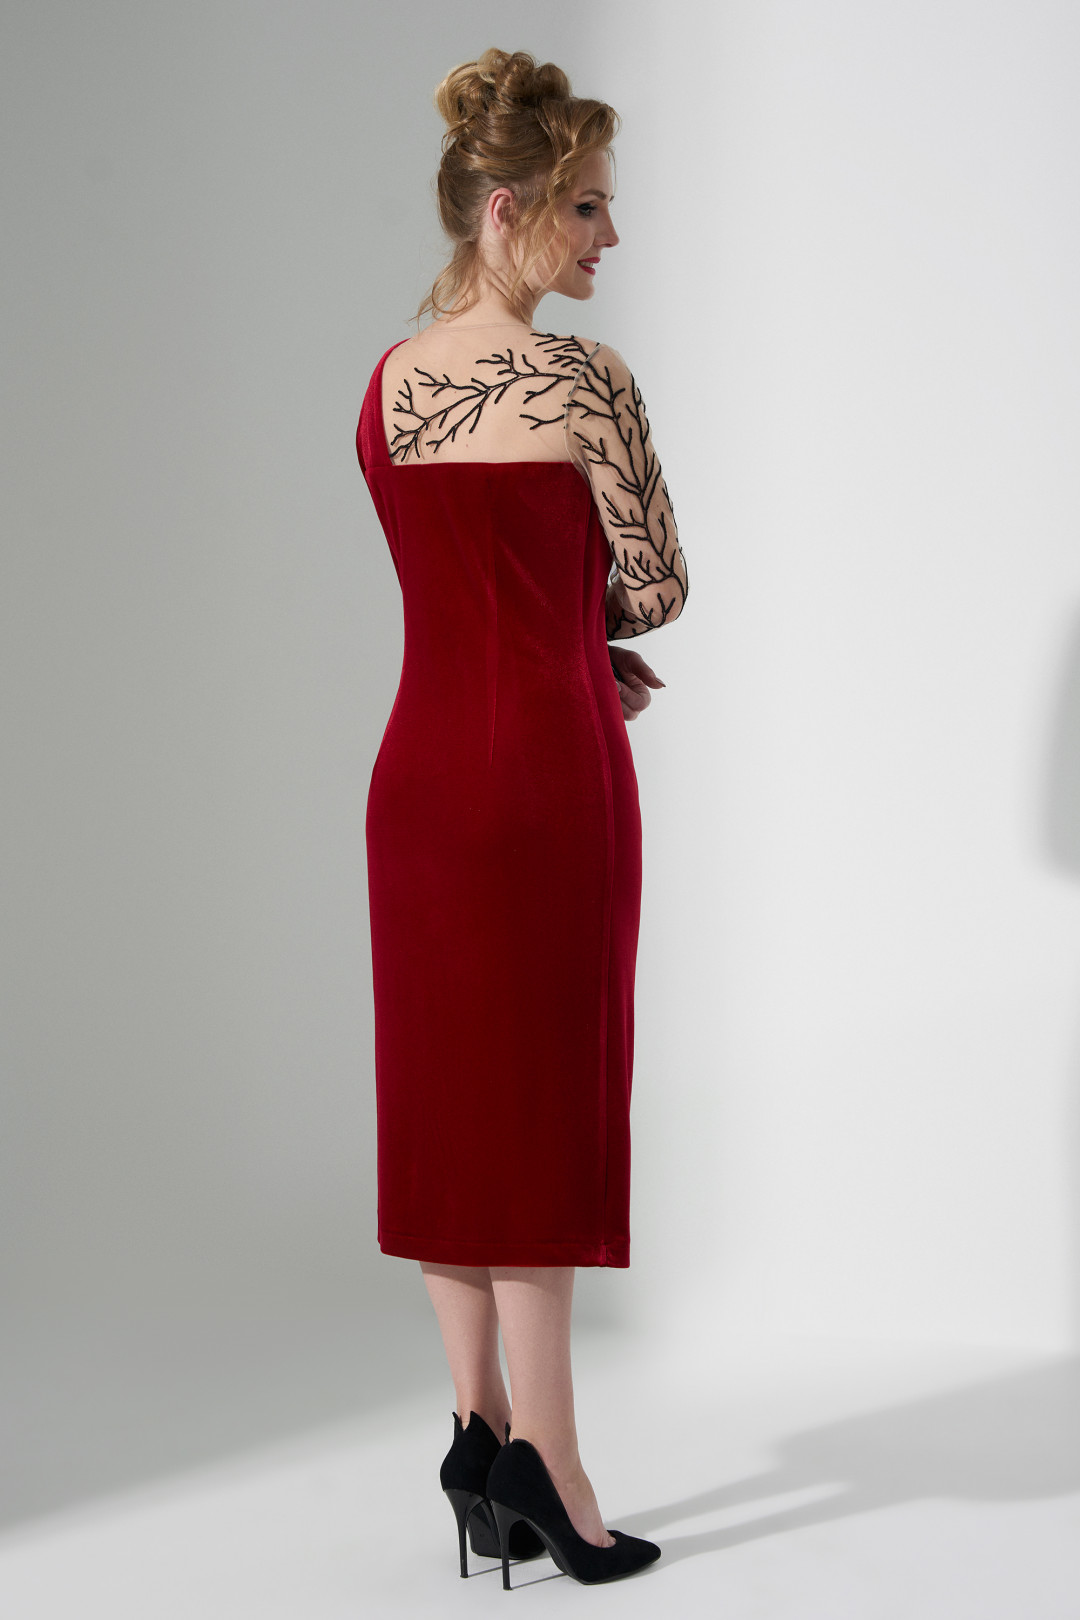 Платье ЕвроМода 485 красный